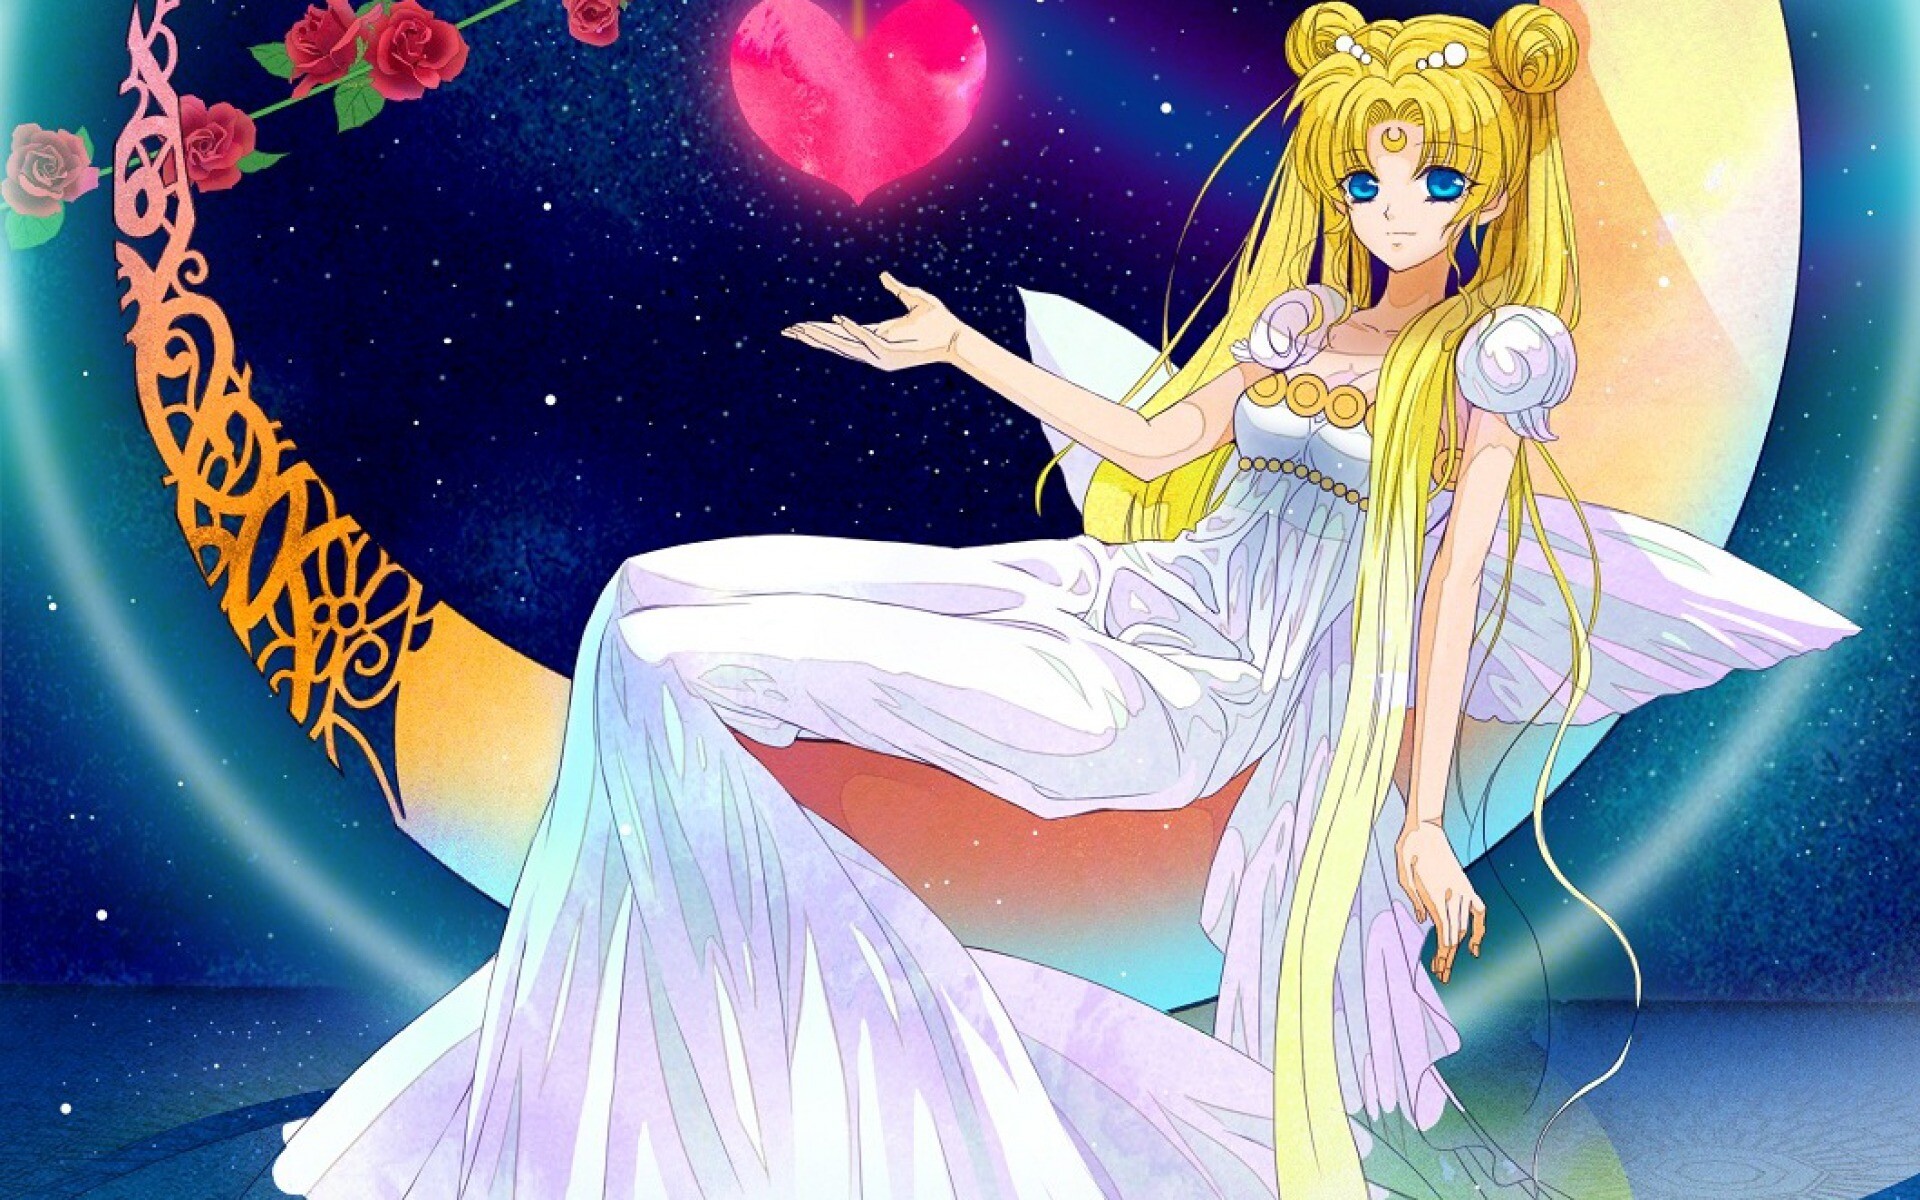 Sailor Moon: Usagi, awakens as the moon princess - Princess Serenity - and acquires the Silver Crystal. 1920x1200 HD Wallpaper.